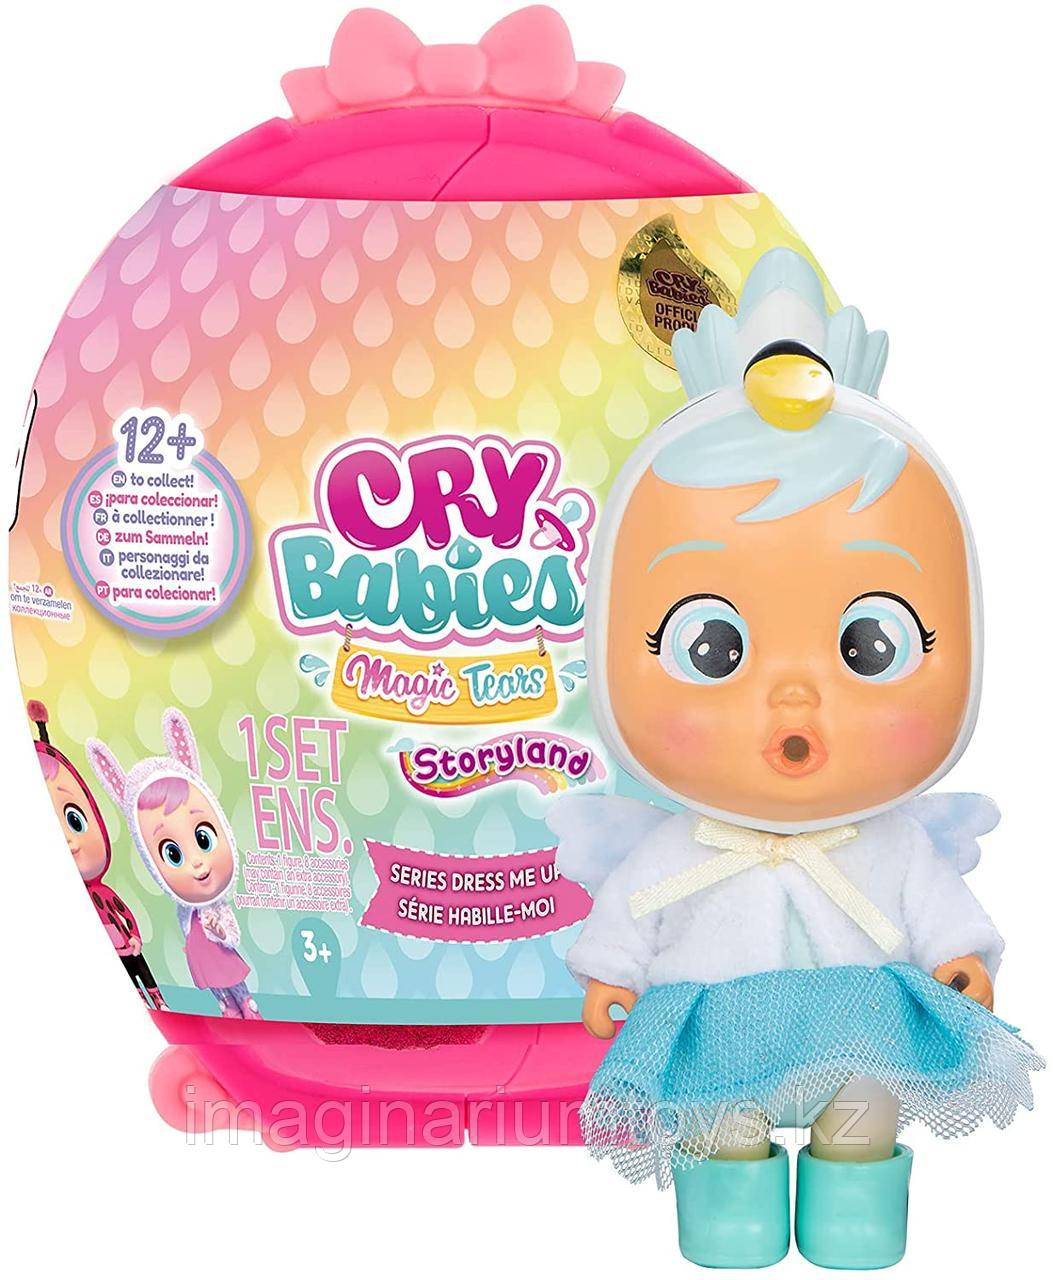 Cry Babies мини плачущие куклы Край Беби серия Dress me up, фото 1